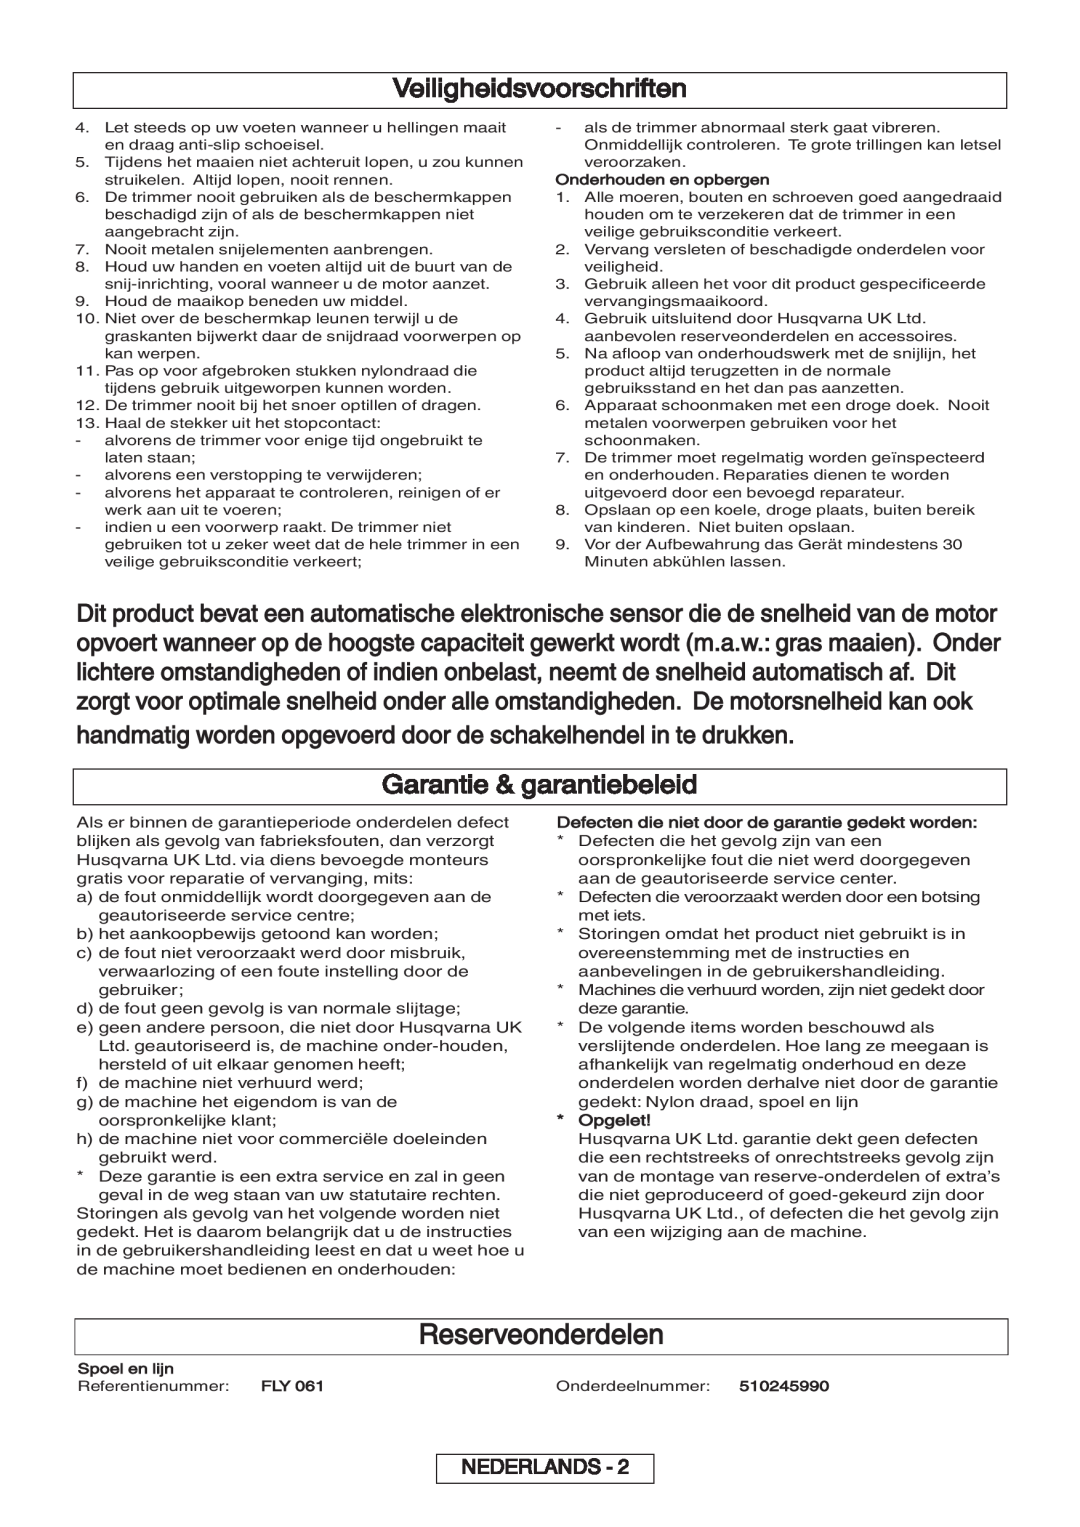 Flymo 600 HD manual Reserveonderdelen, Garantie & garantiebeleid, Veiligheidsvoorschriften, Nederlands 